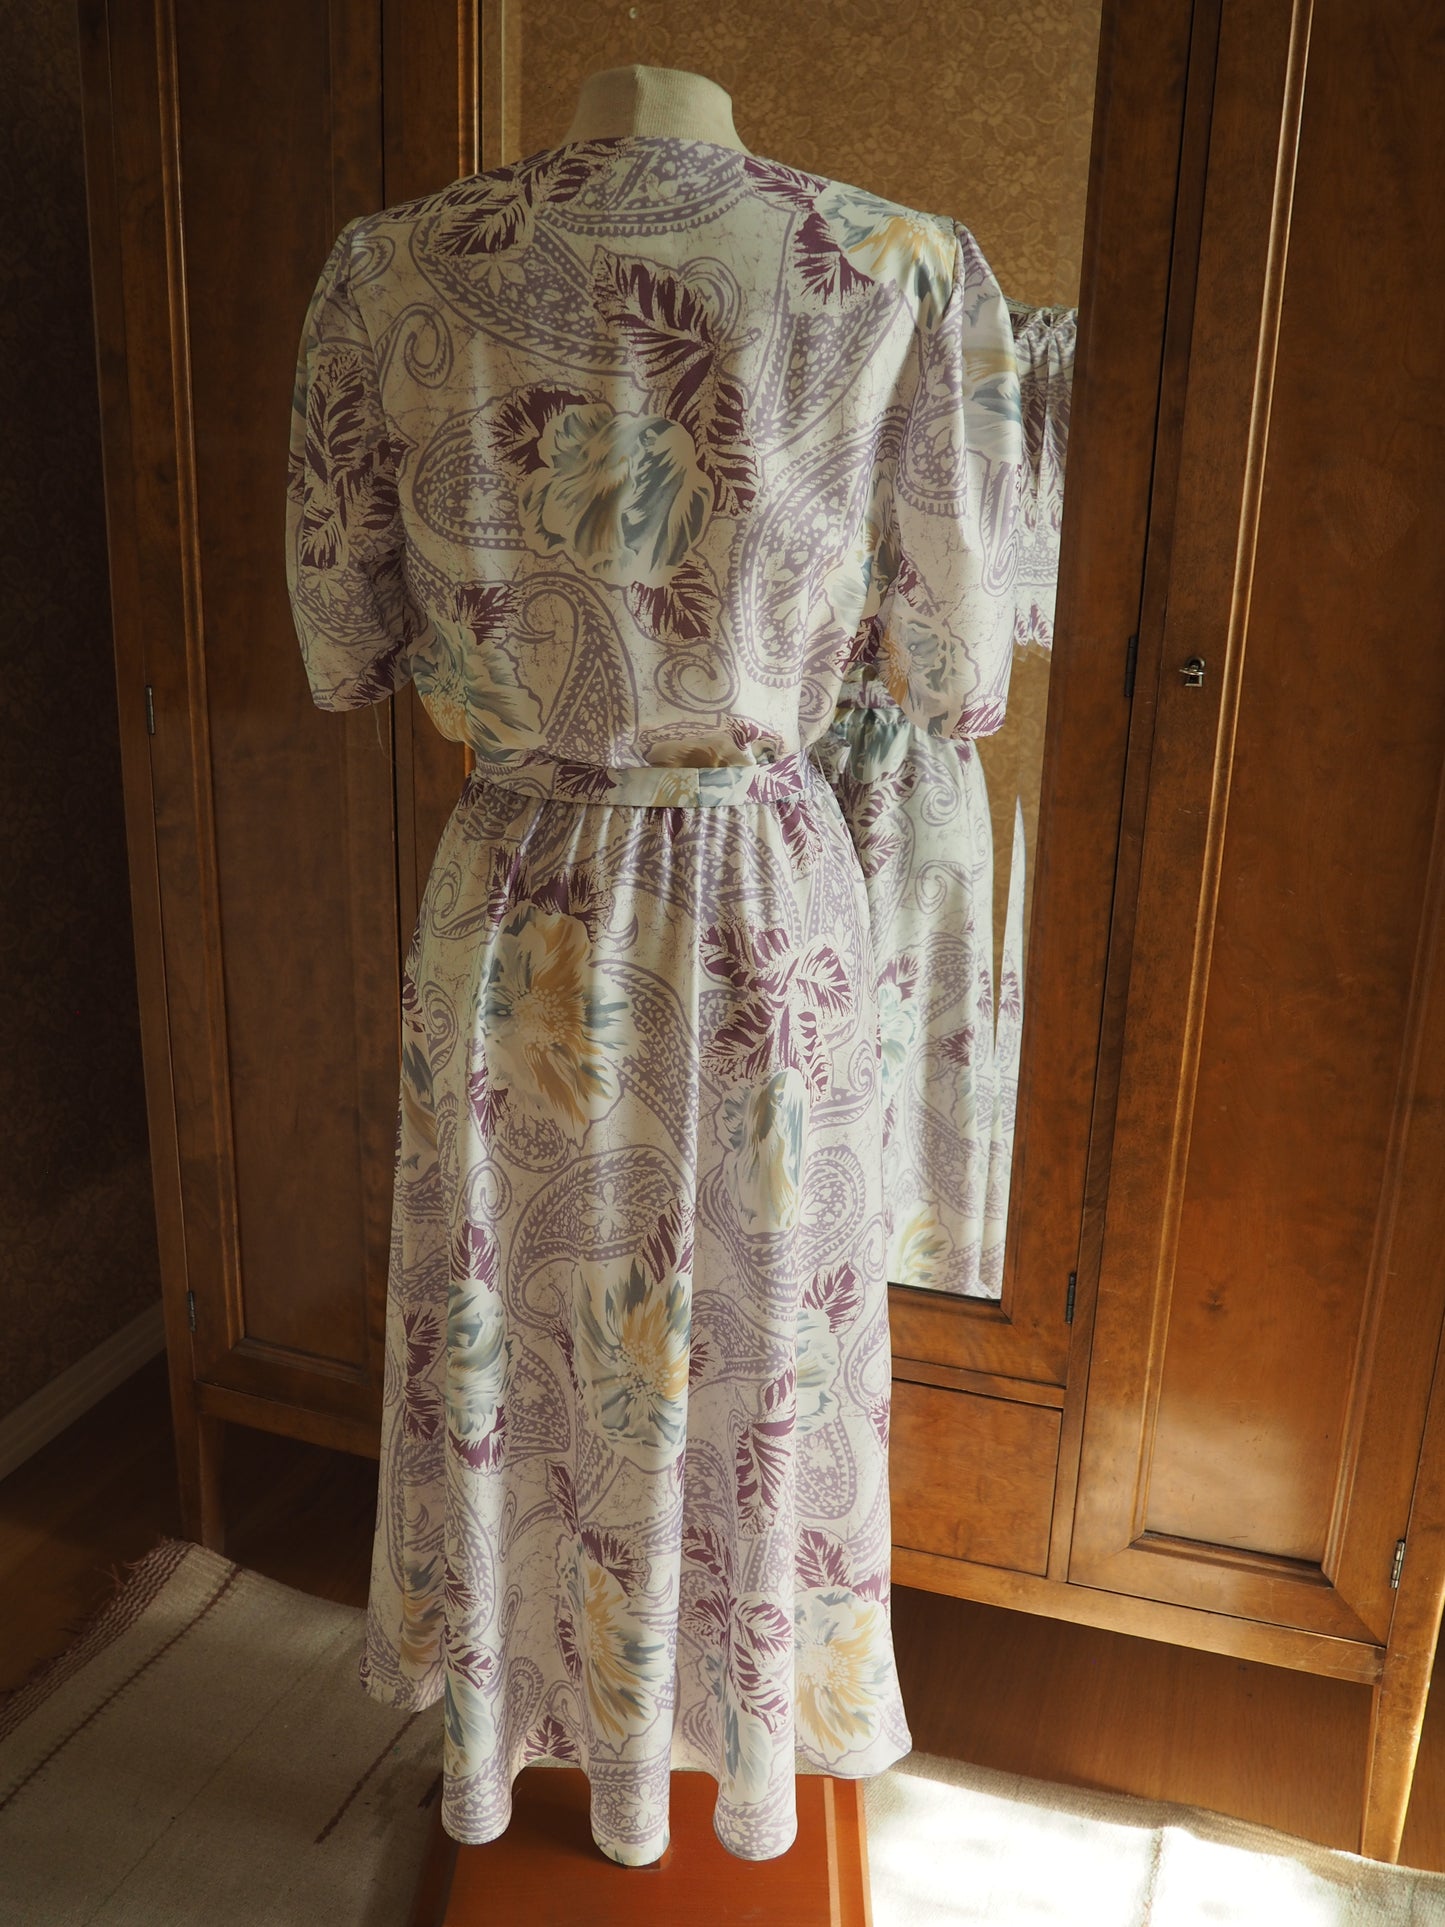 Vaalea kuviollinen Carolin Muoti-Hovin mekko, käyttämätöntä vanhaa varastoa